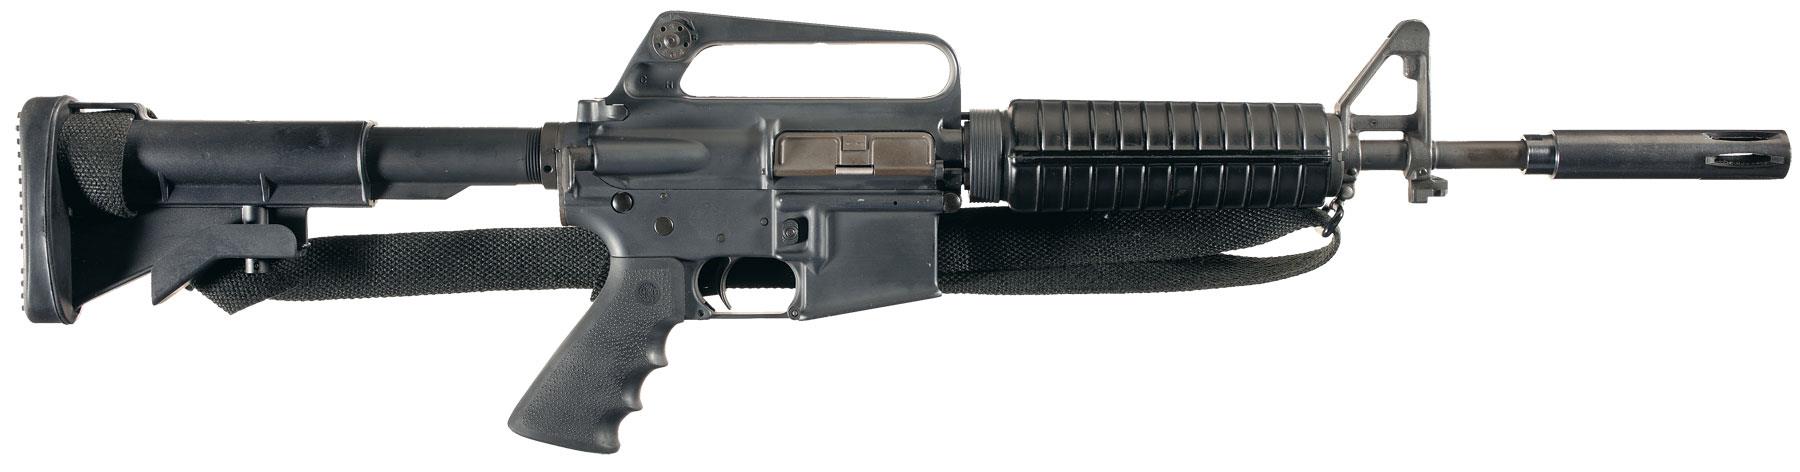 Rare Original Colt M16A1 Class III Registered Fully Automati